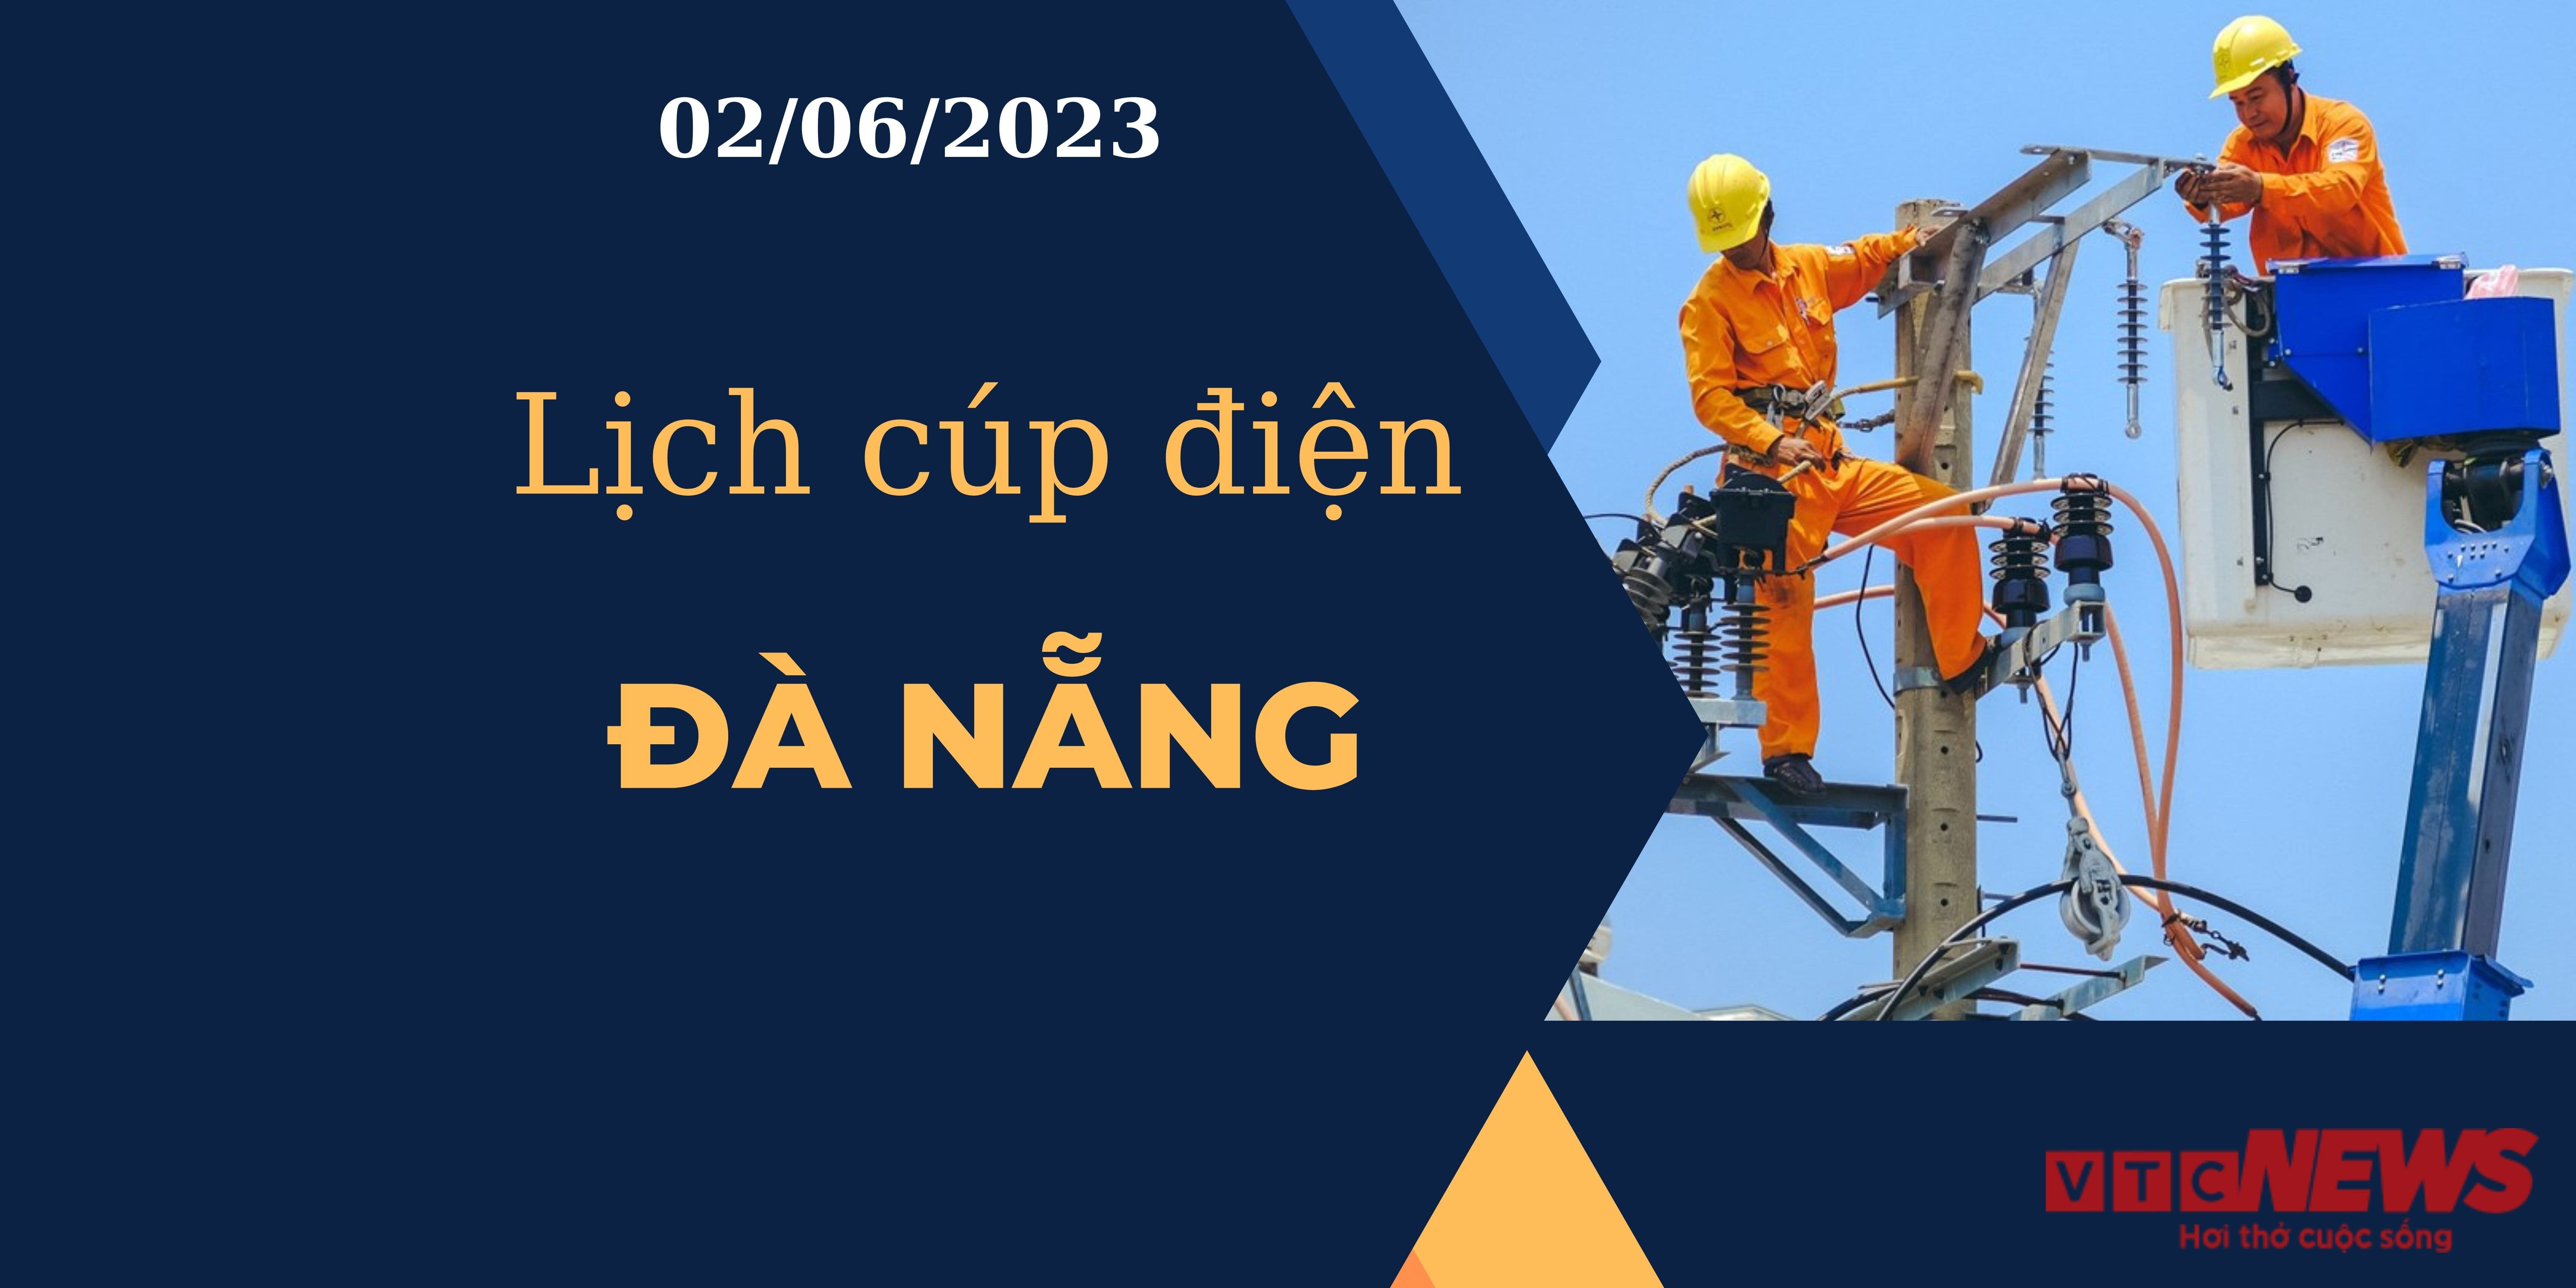 Lịch cúp điện hôm nay tại Đà Nẵng ngày 02/06/2023 - 1